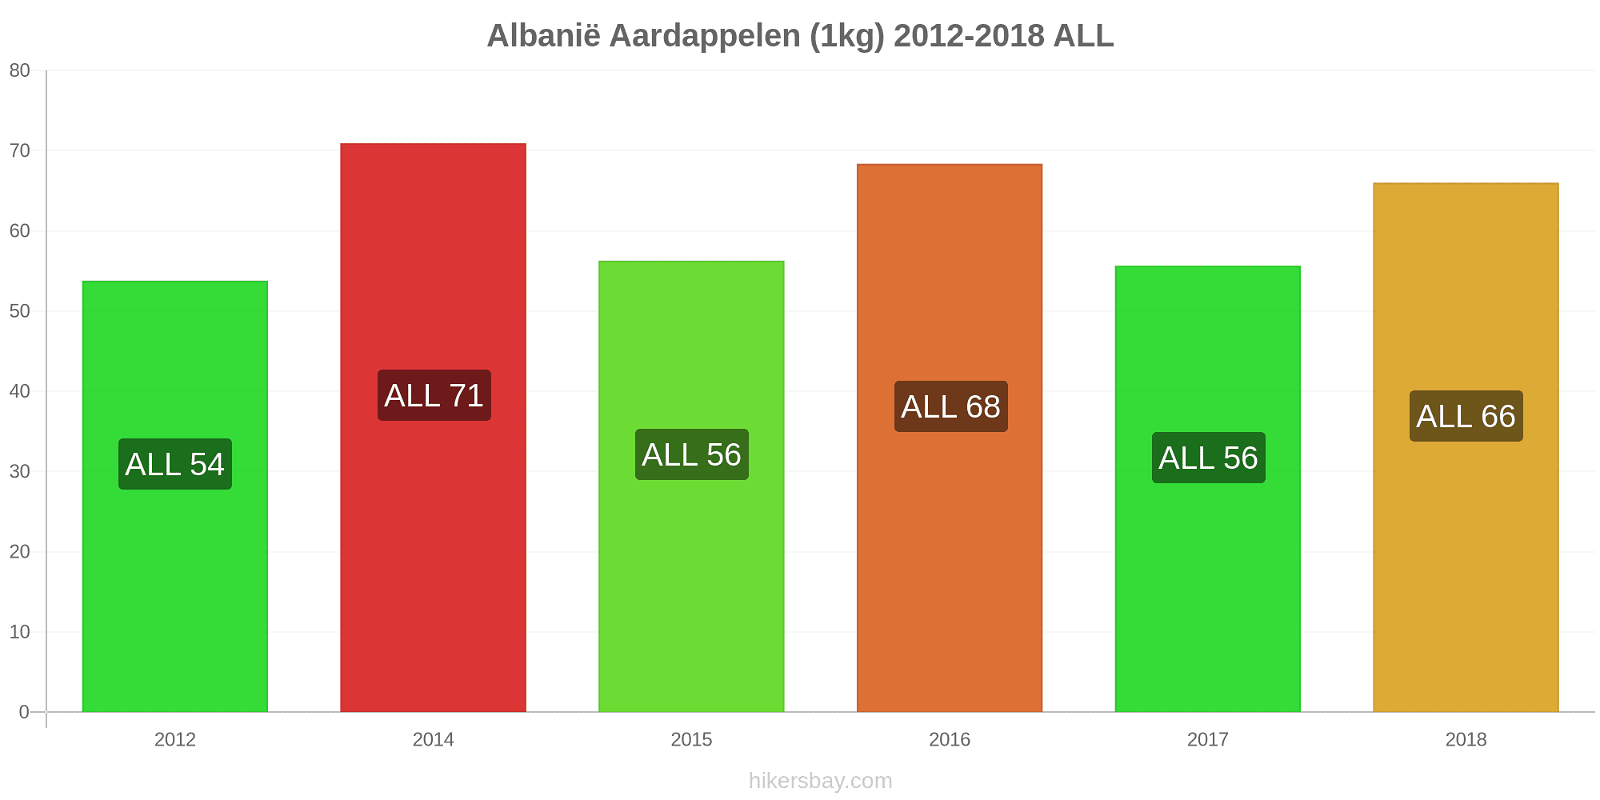 Albanië prijswijzigingen Aardappelen (1kg) hikersbay.com